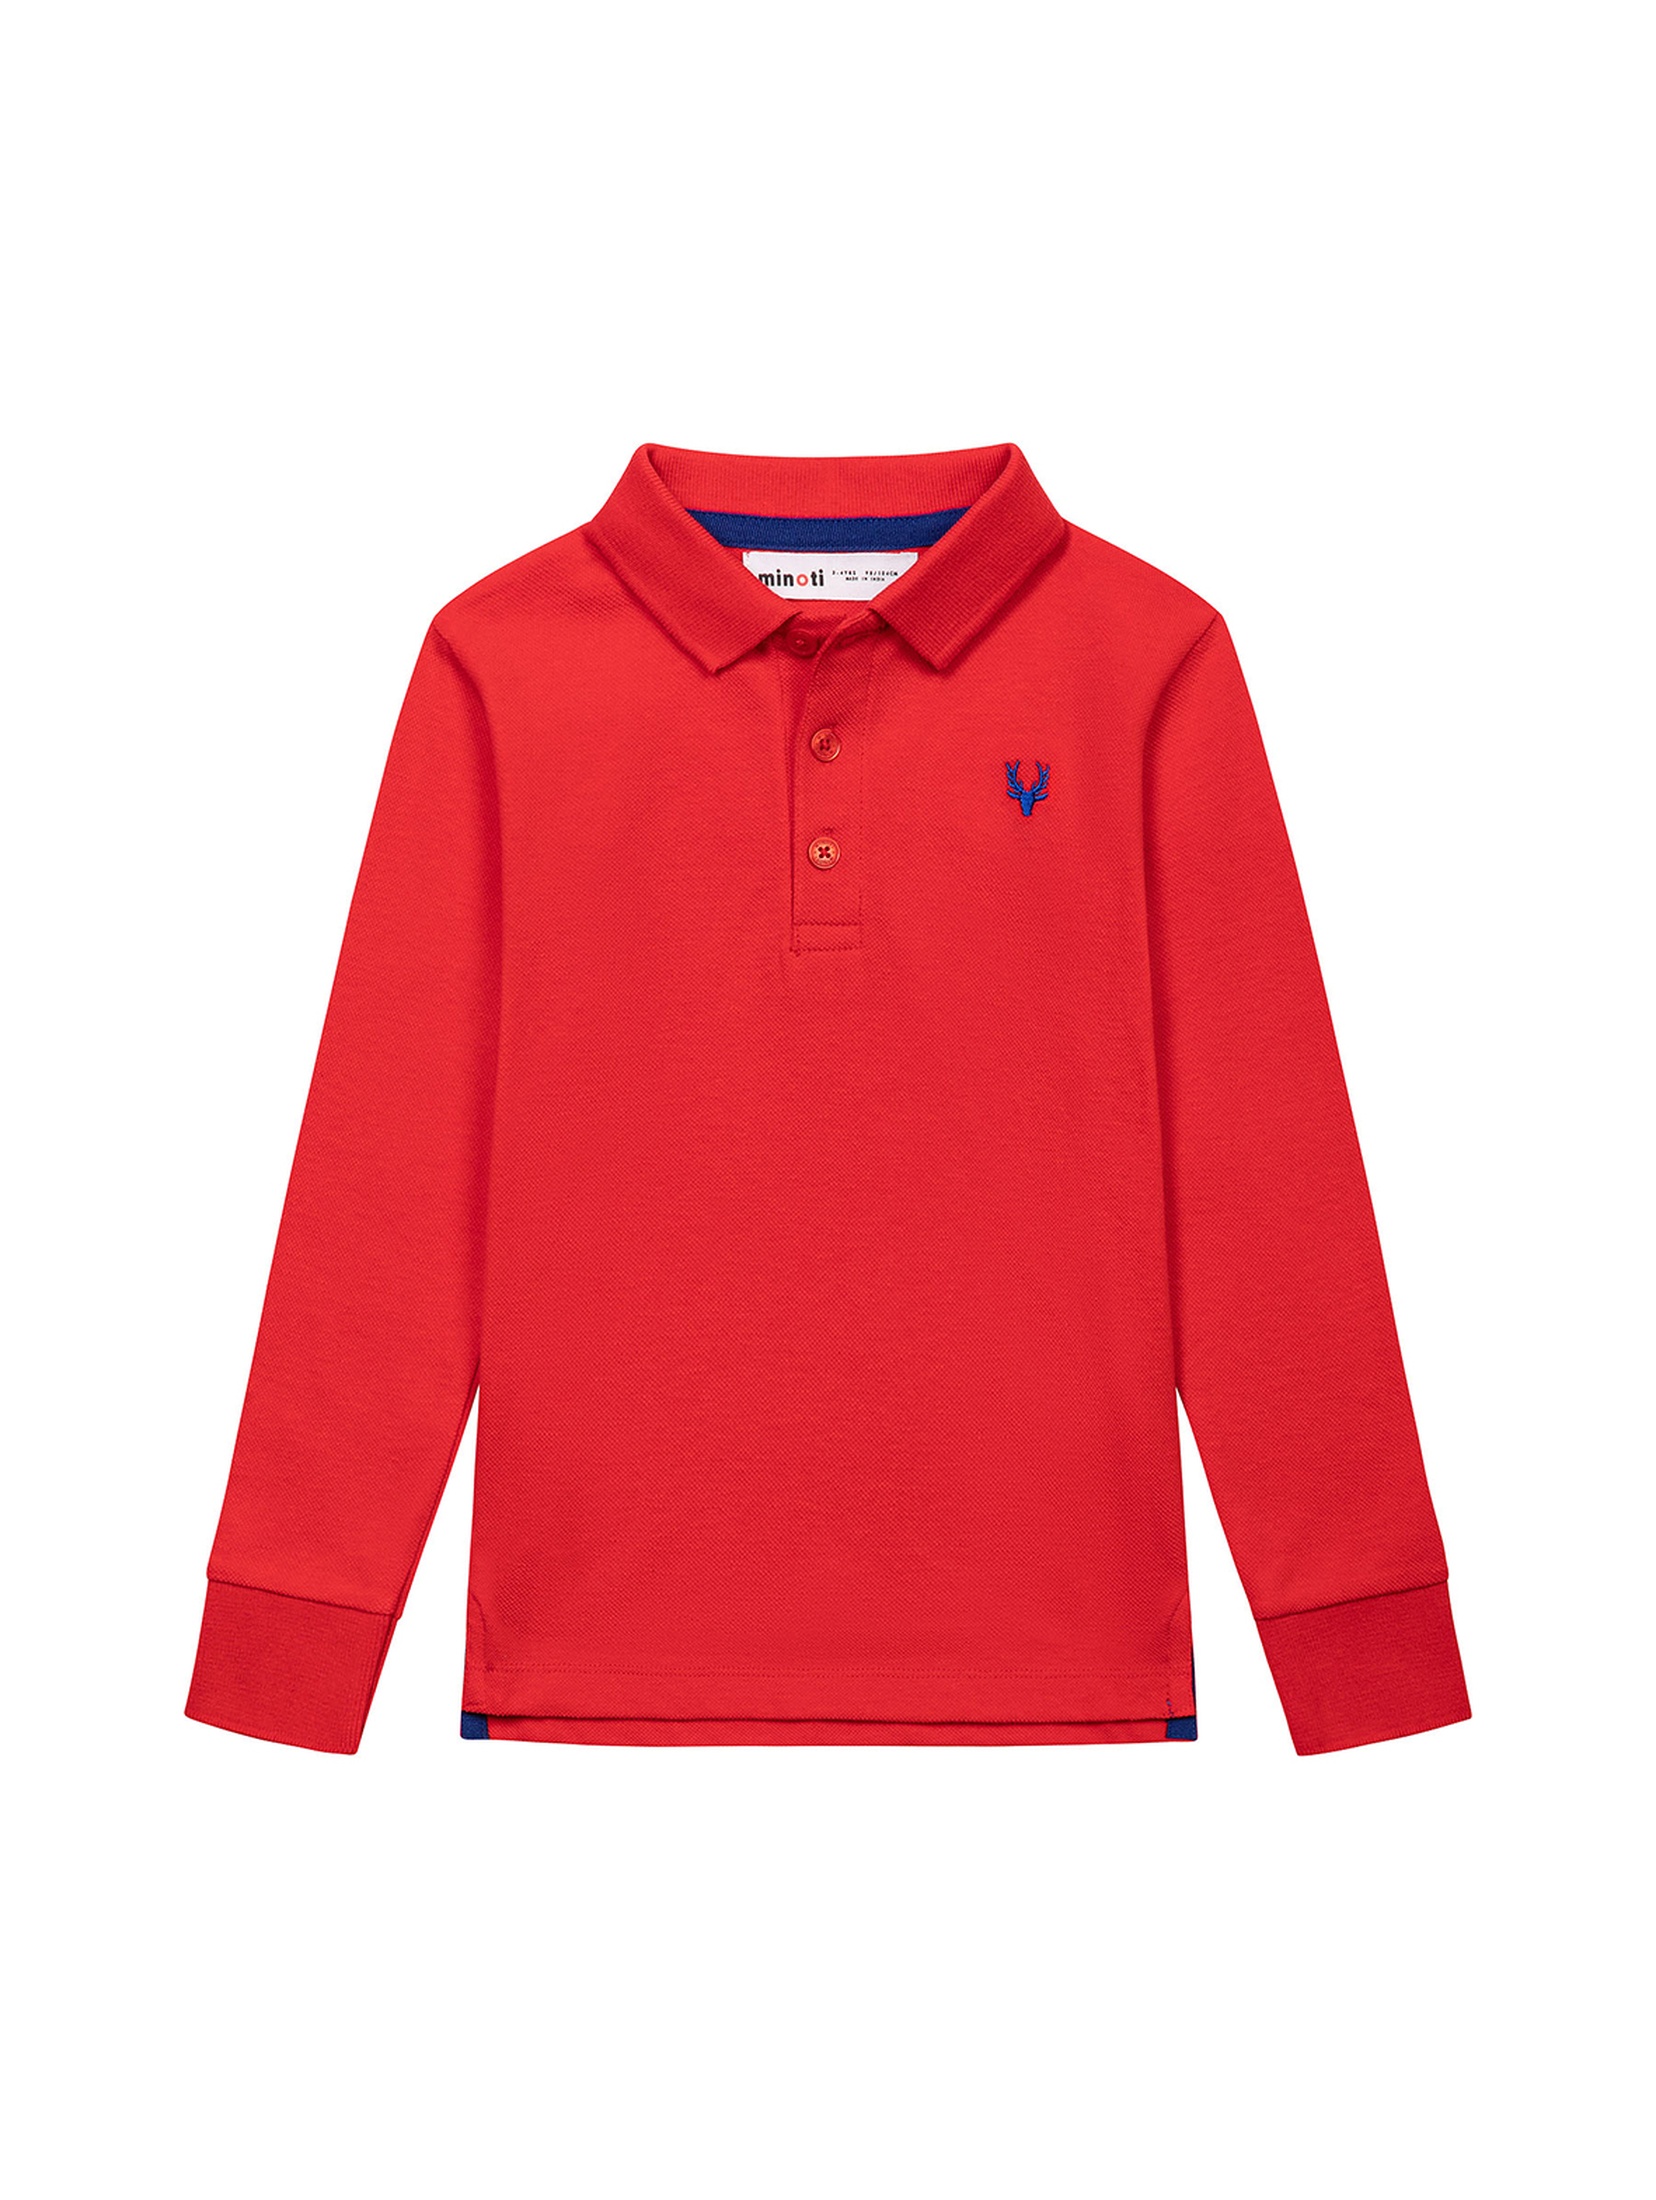 Bawełniana bluzka polo dla chłopca czerwona